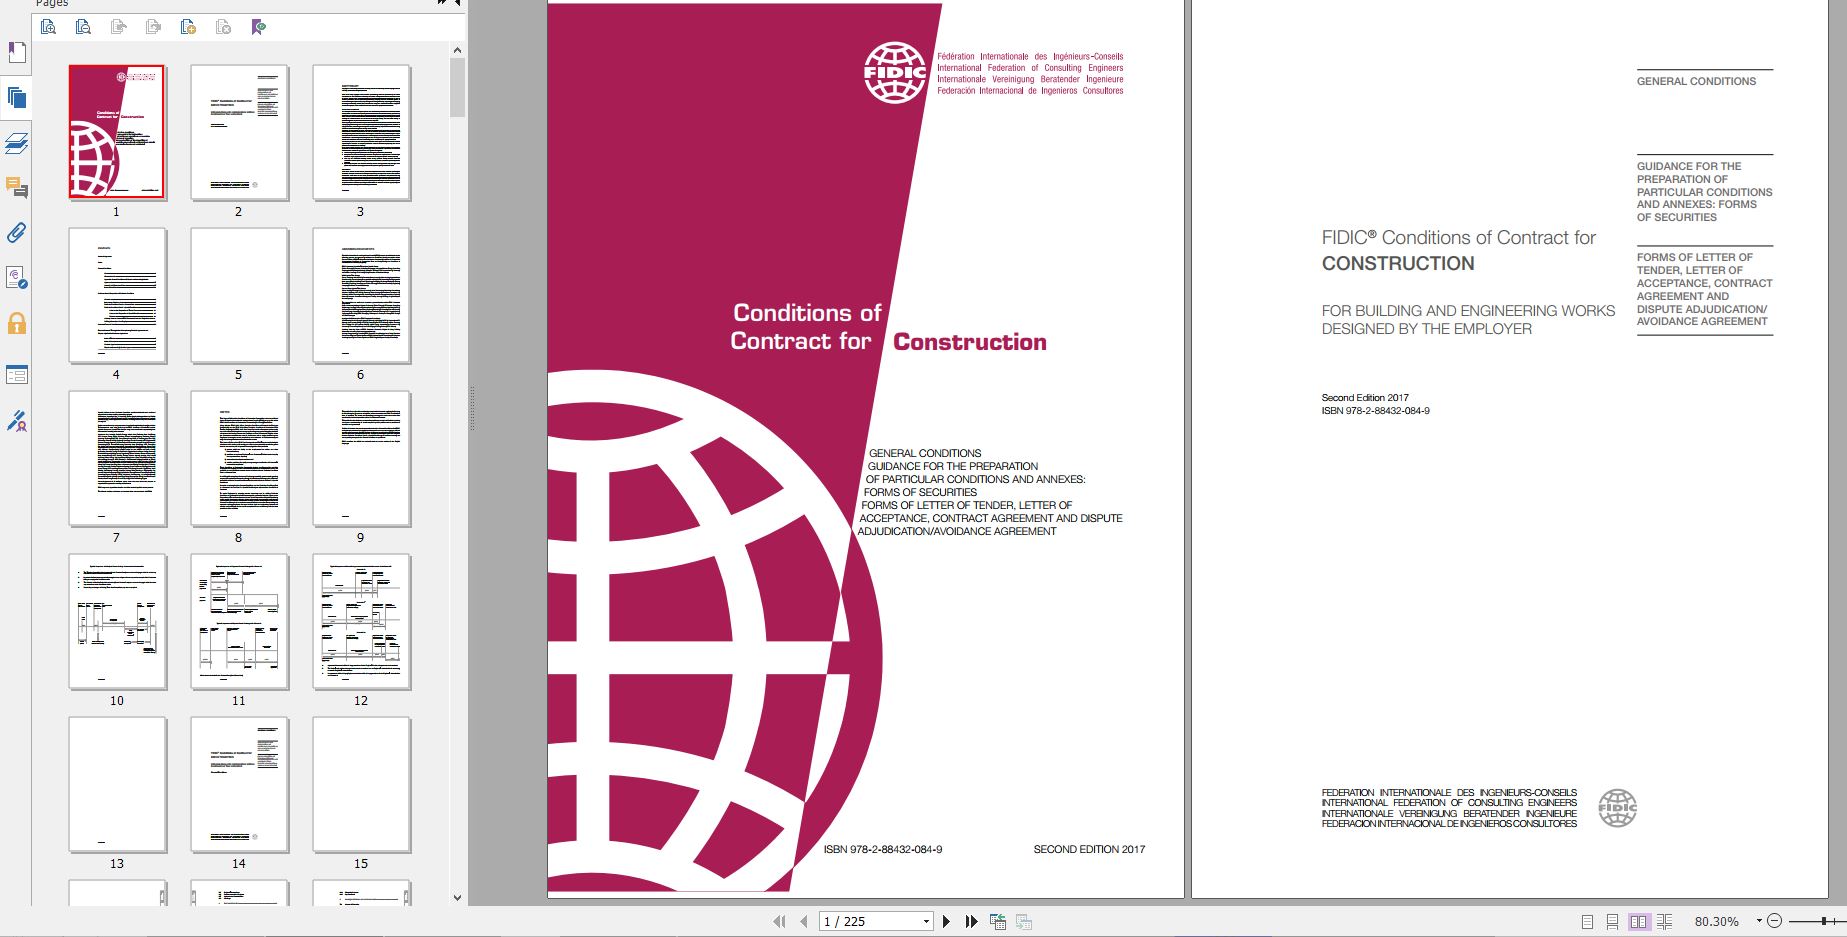 دانلود کتاب Construction Contract 2nd Ed (2017 Red Book) خرید ایبوک قرارداد ساخت دریافت PDF ایبوک FIDIC Contract for Construction دانلود از FIDIC گیگاپیپر